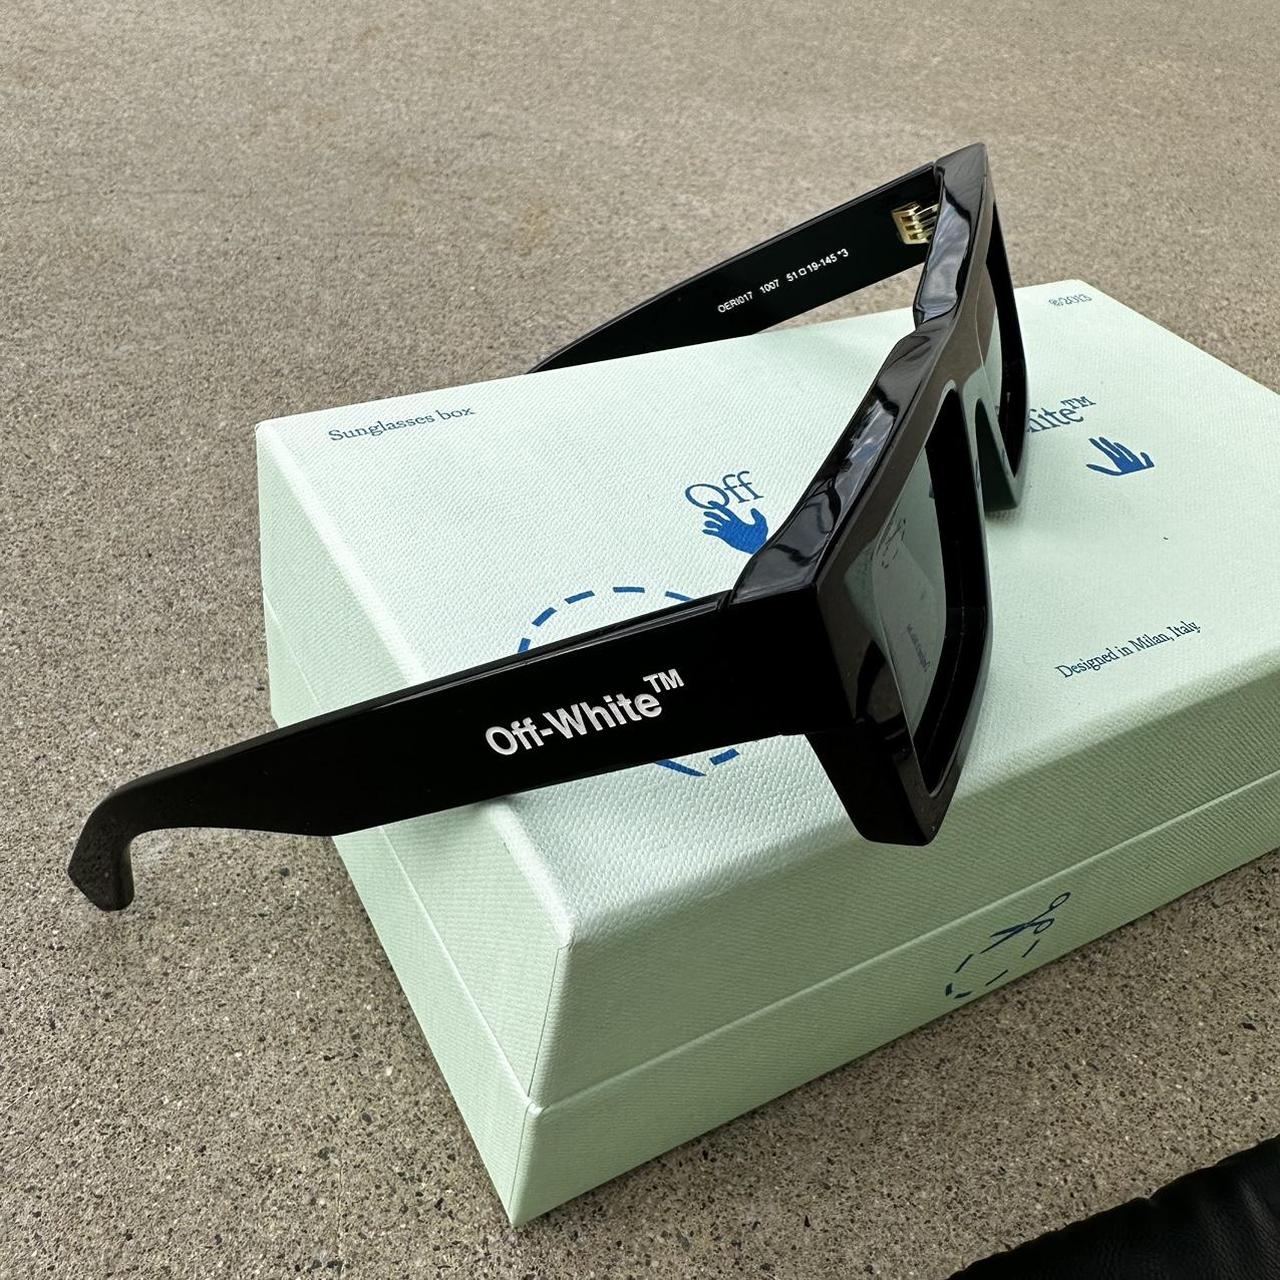 Buy Off-White NASSAU OERI017 1007 Sunglasses